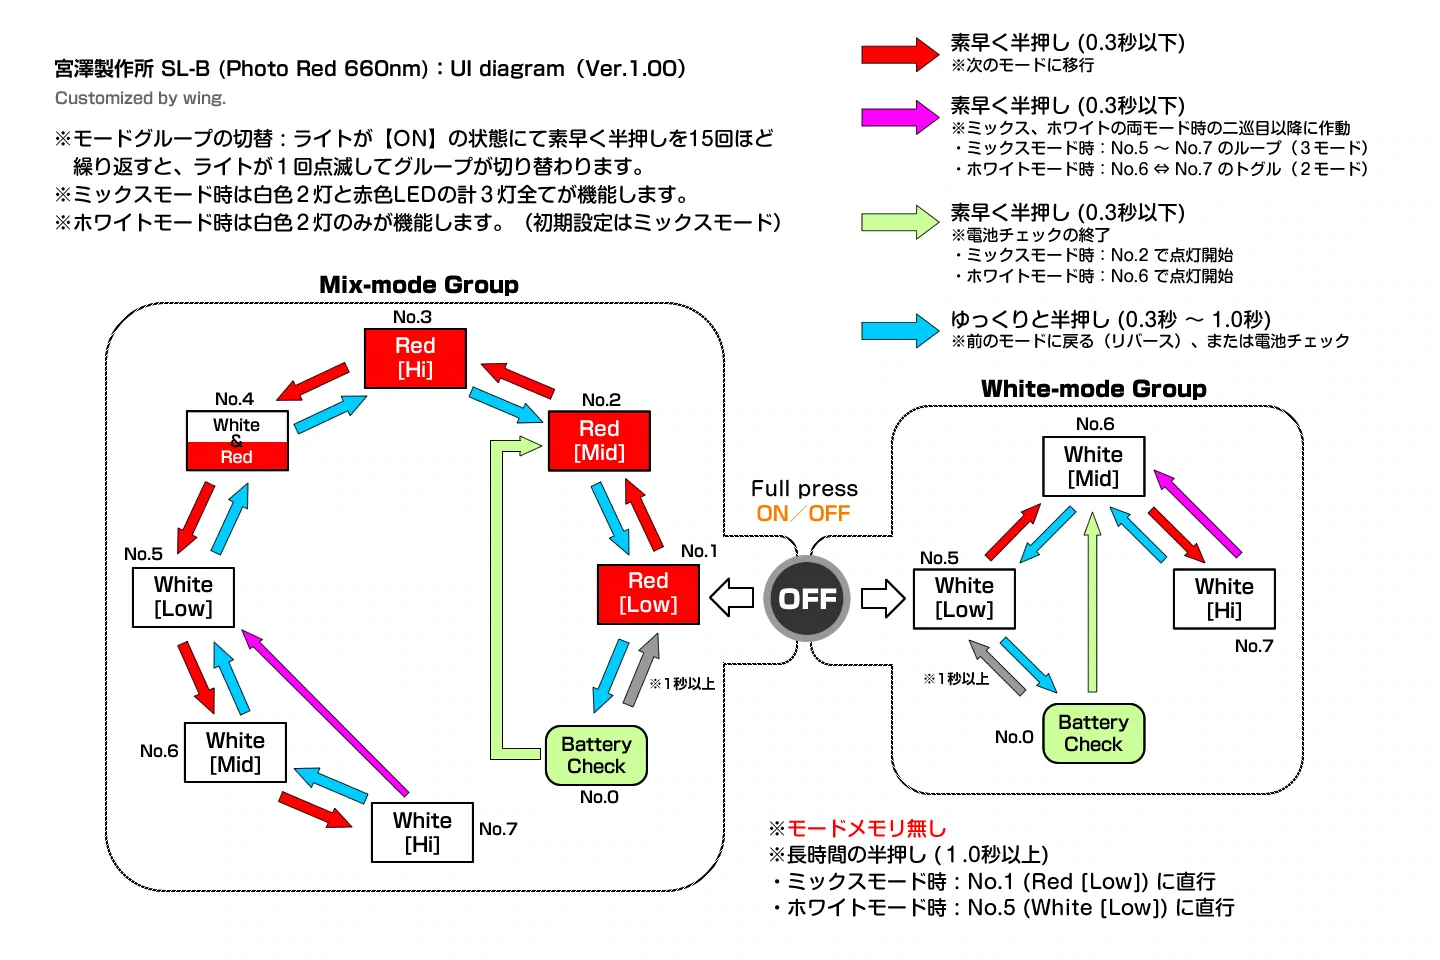 宮澤製作所 SL-B / UI-Diagram